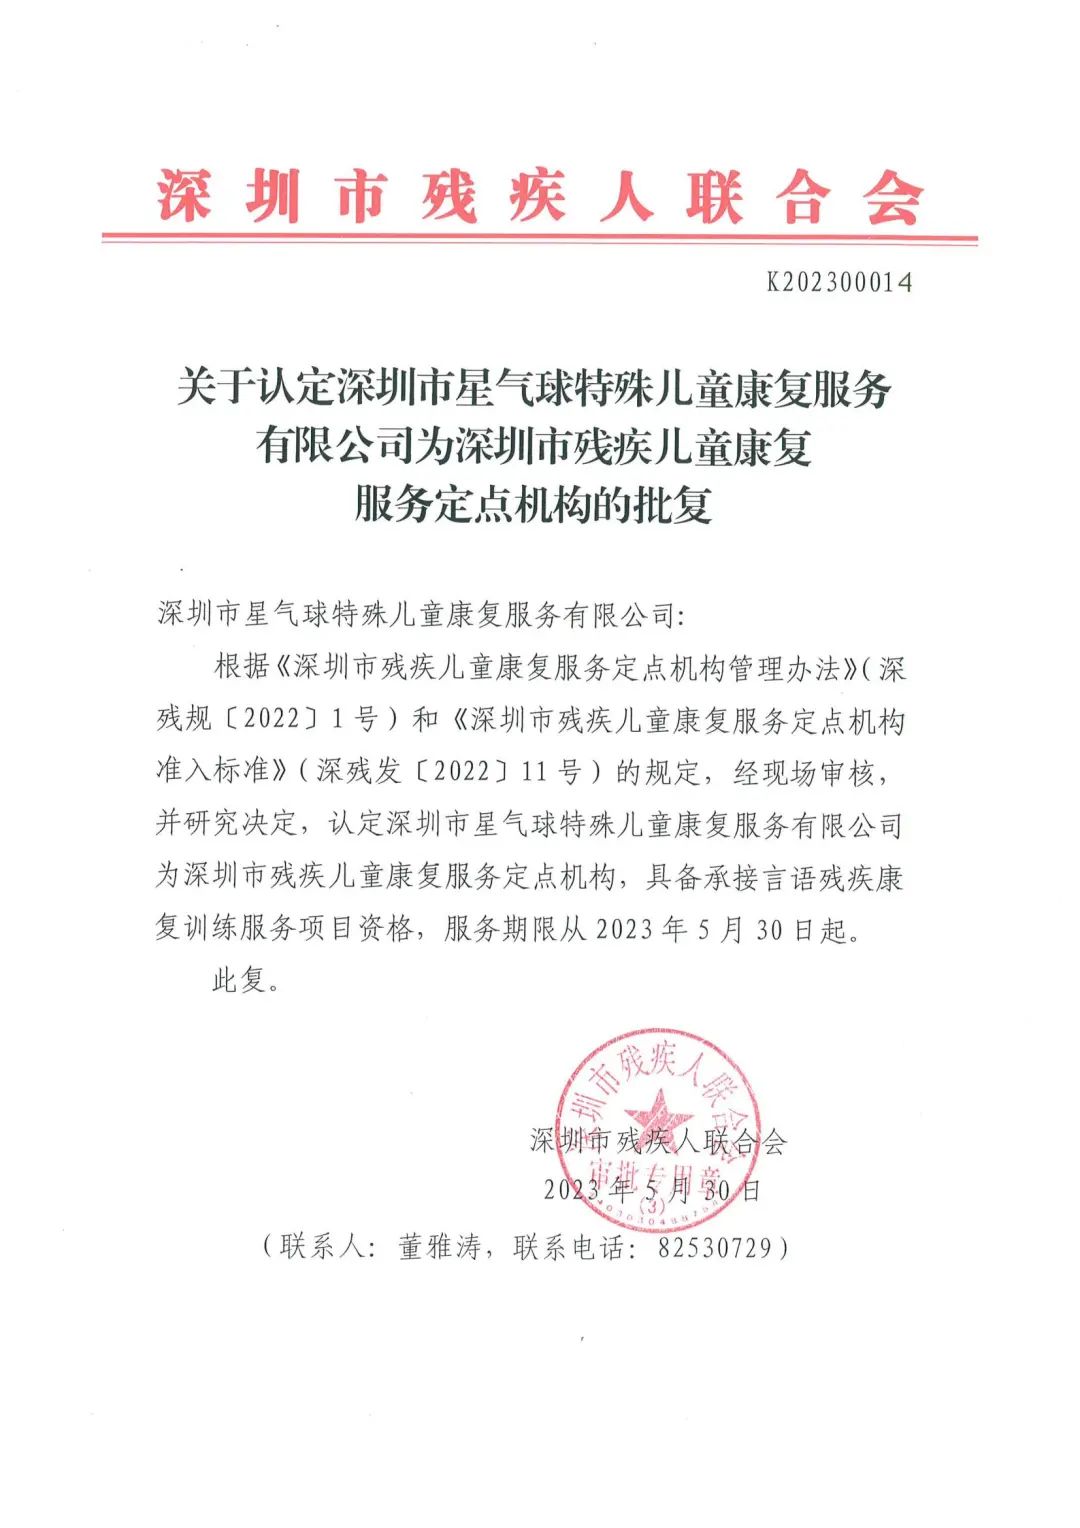 深圳星气球龙岗总部高分通过深圳市残联专家团队评定成为言语定点单位